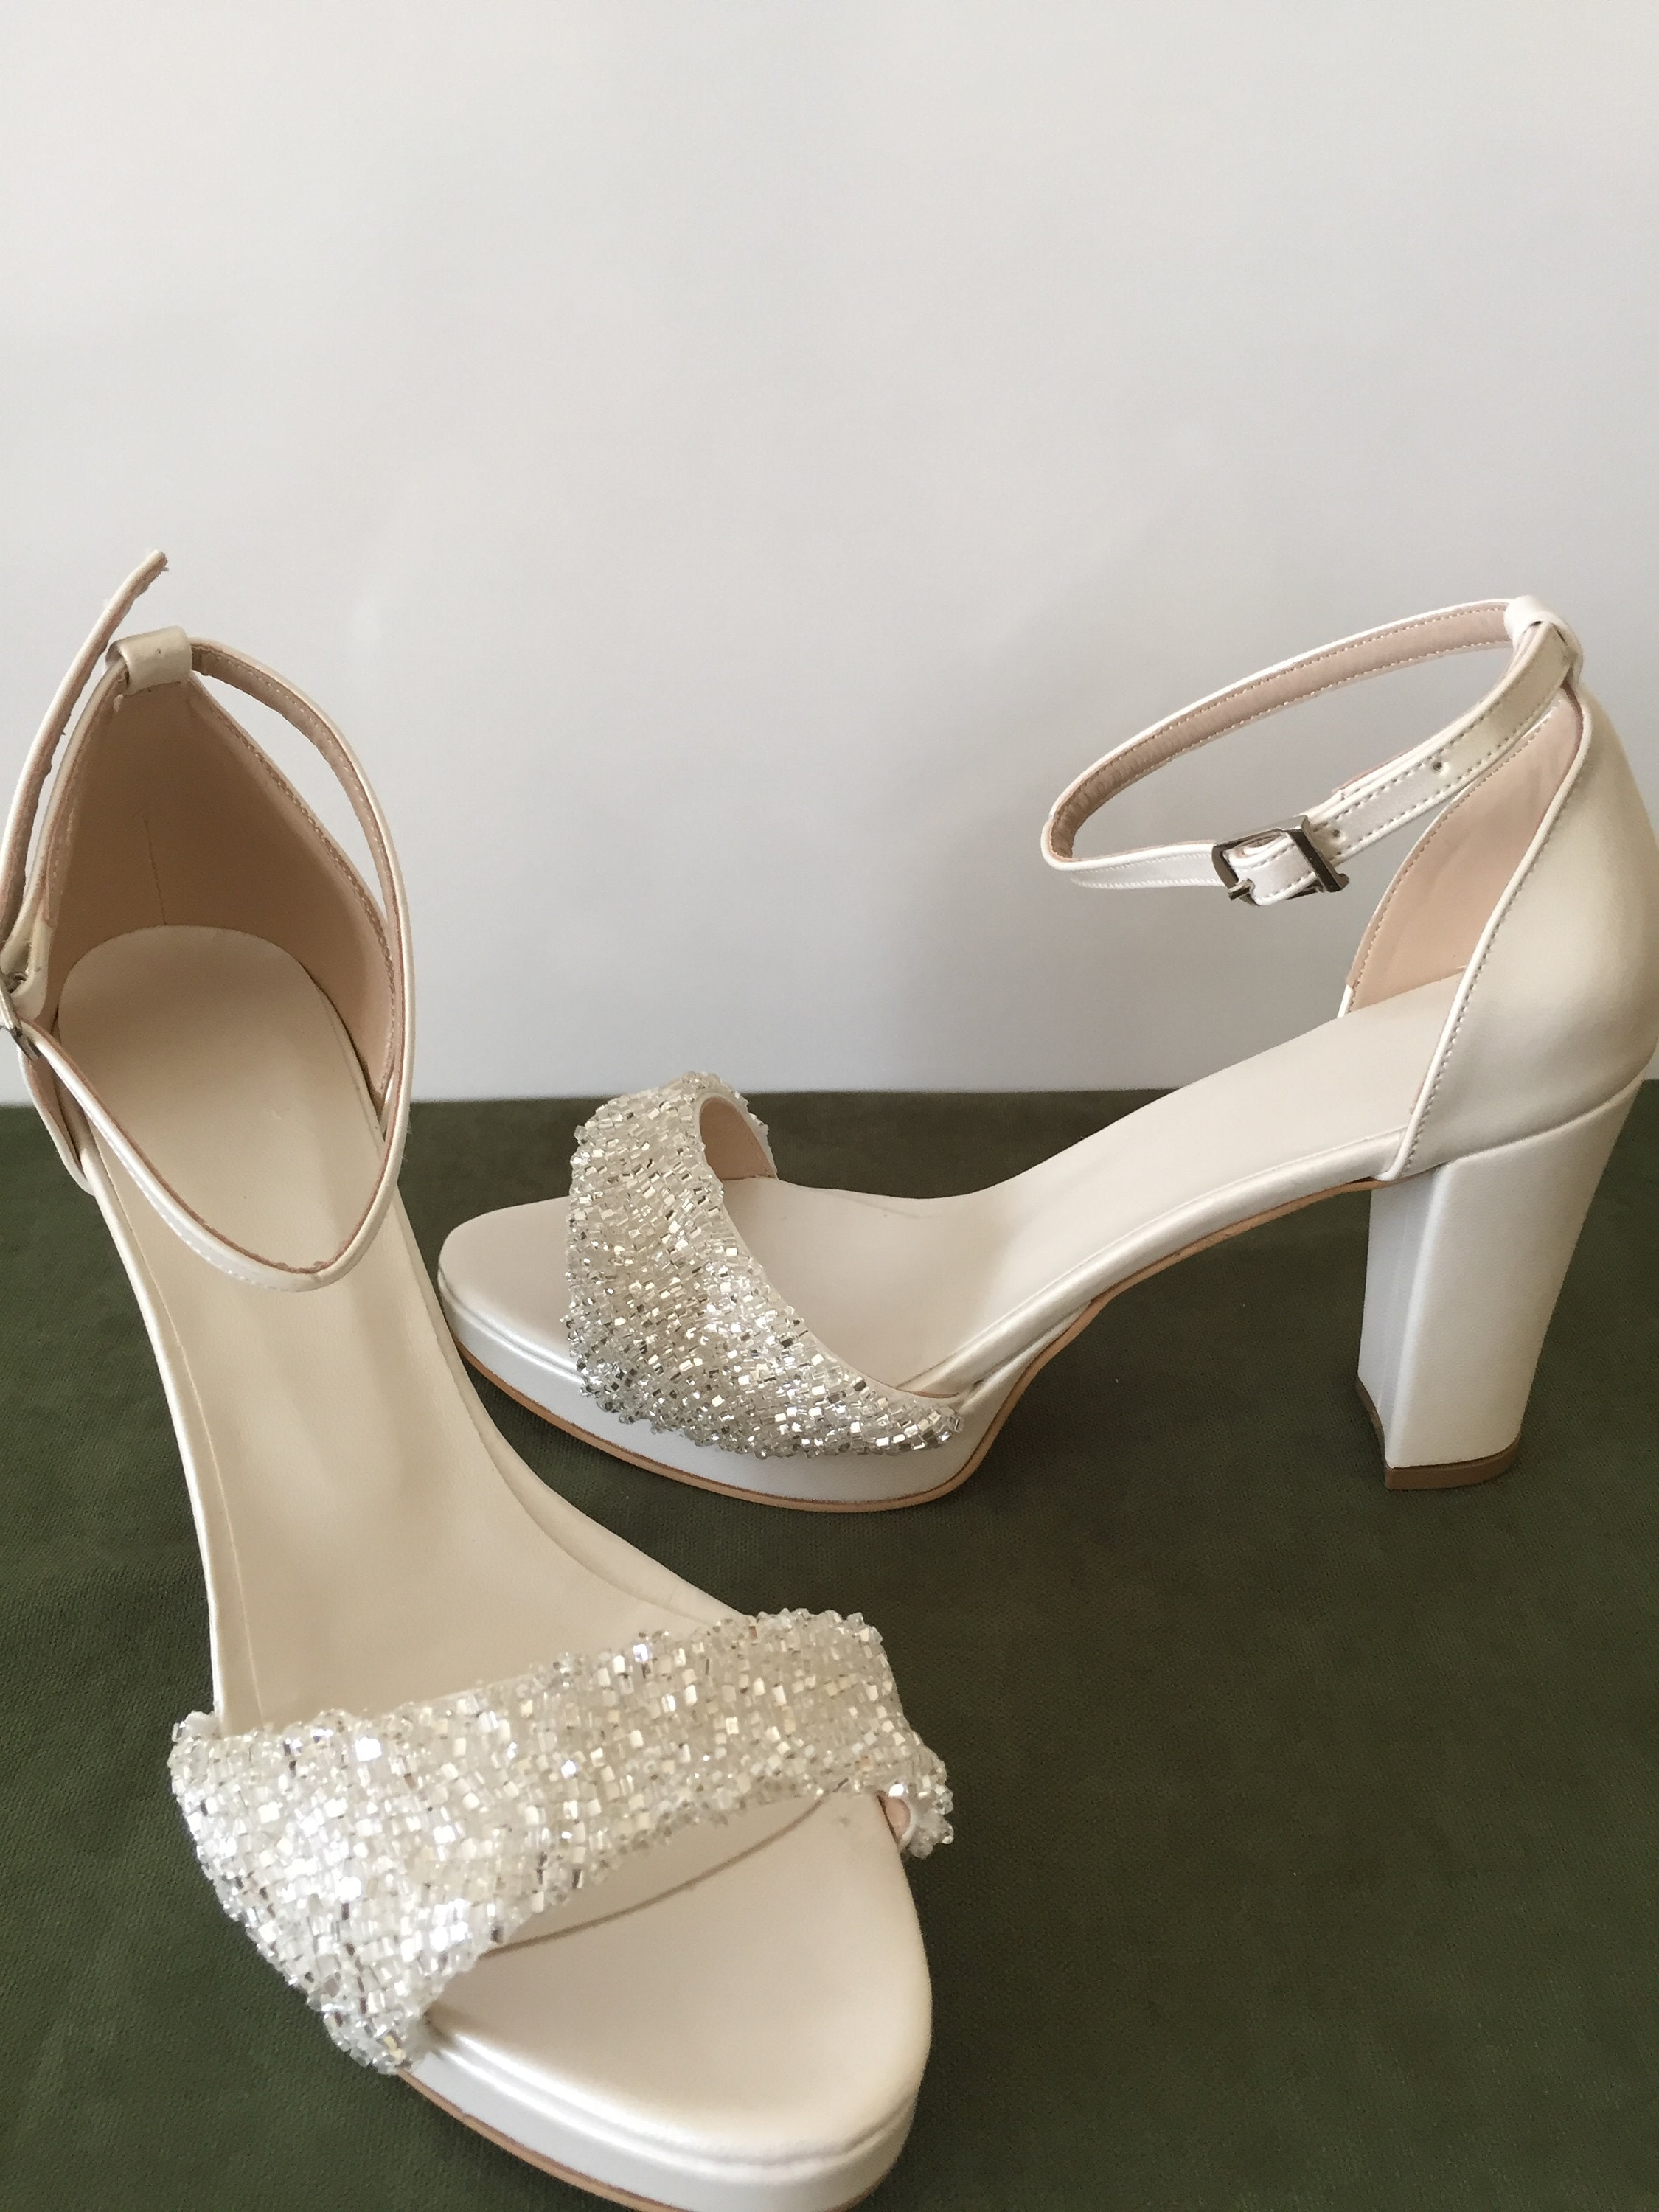 Stone Embellished Wedding Shoes Bridal Shoes Heels | Etsy